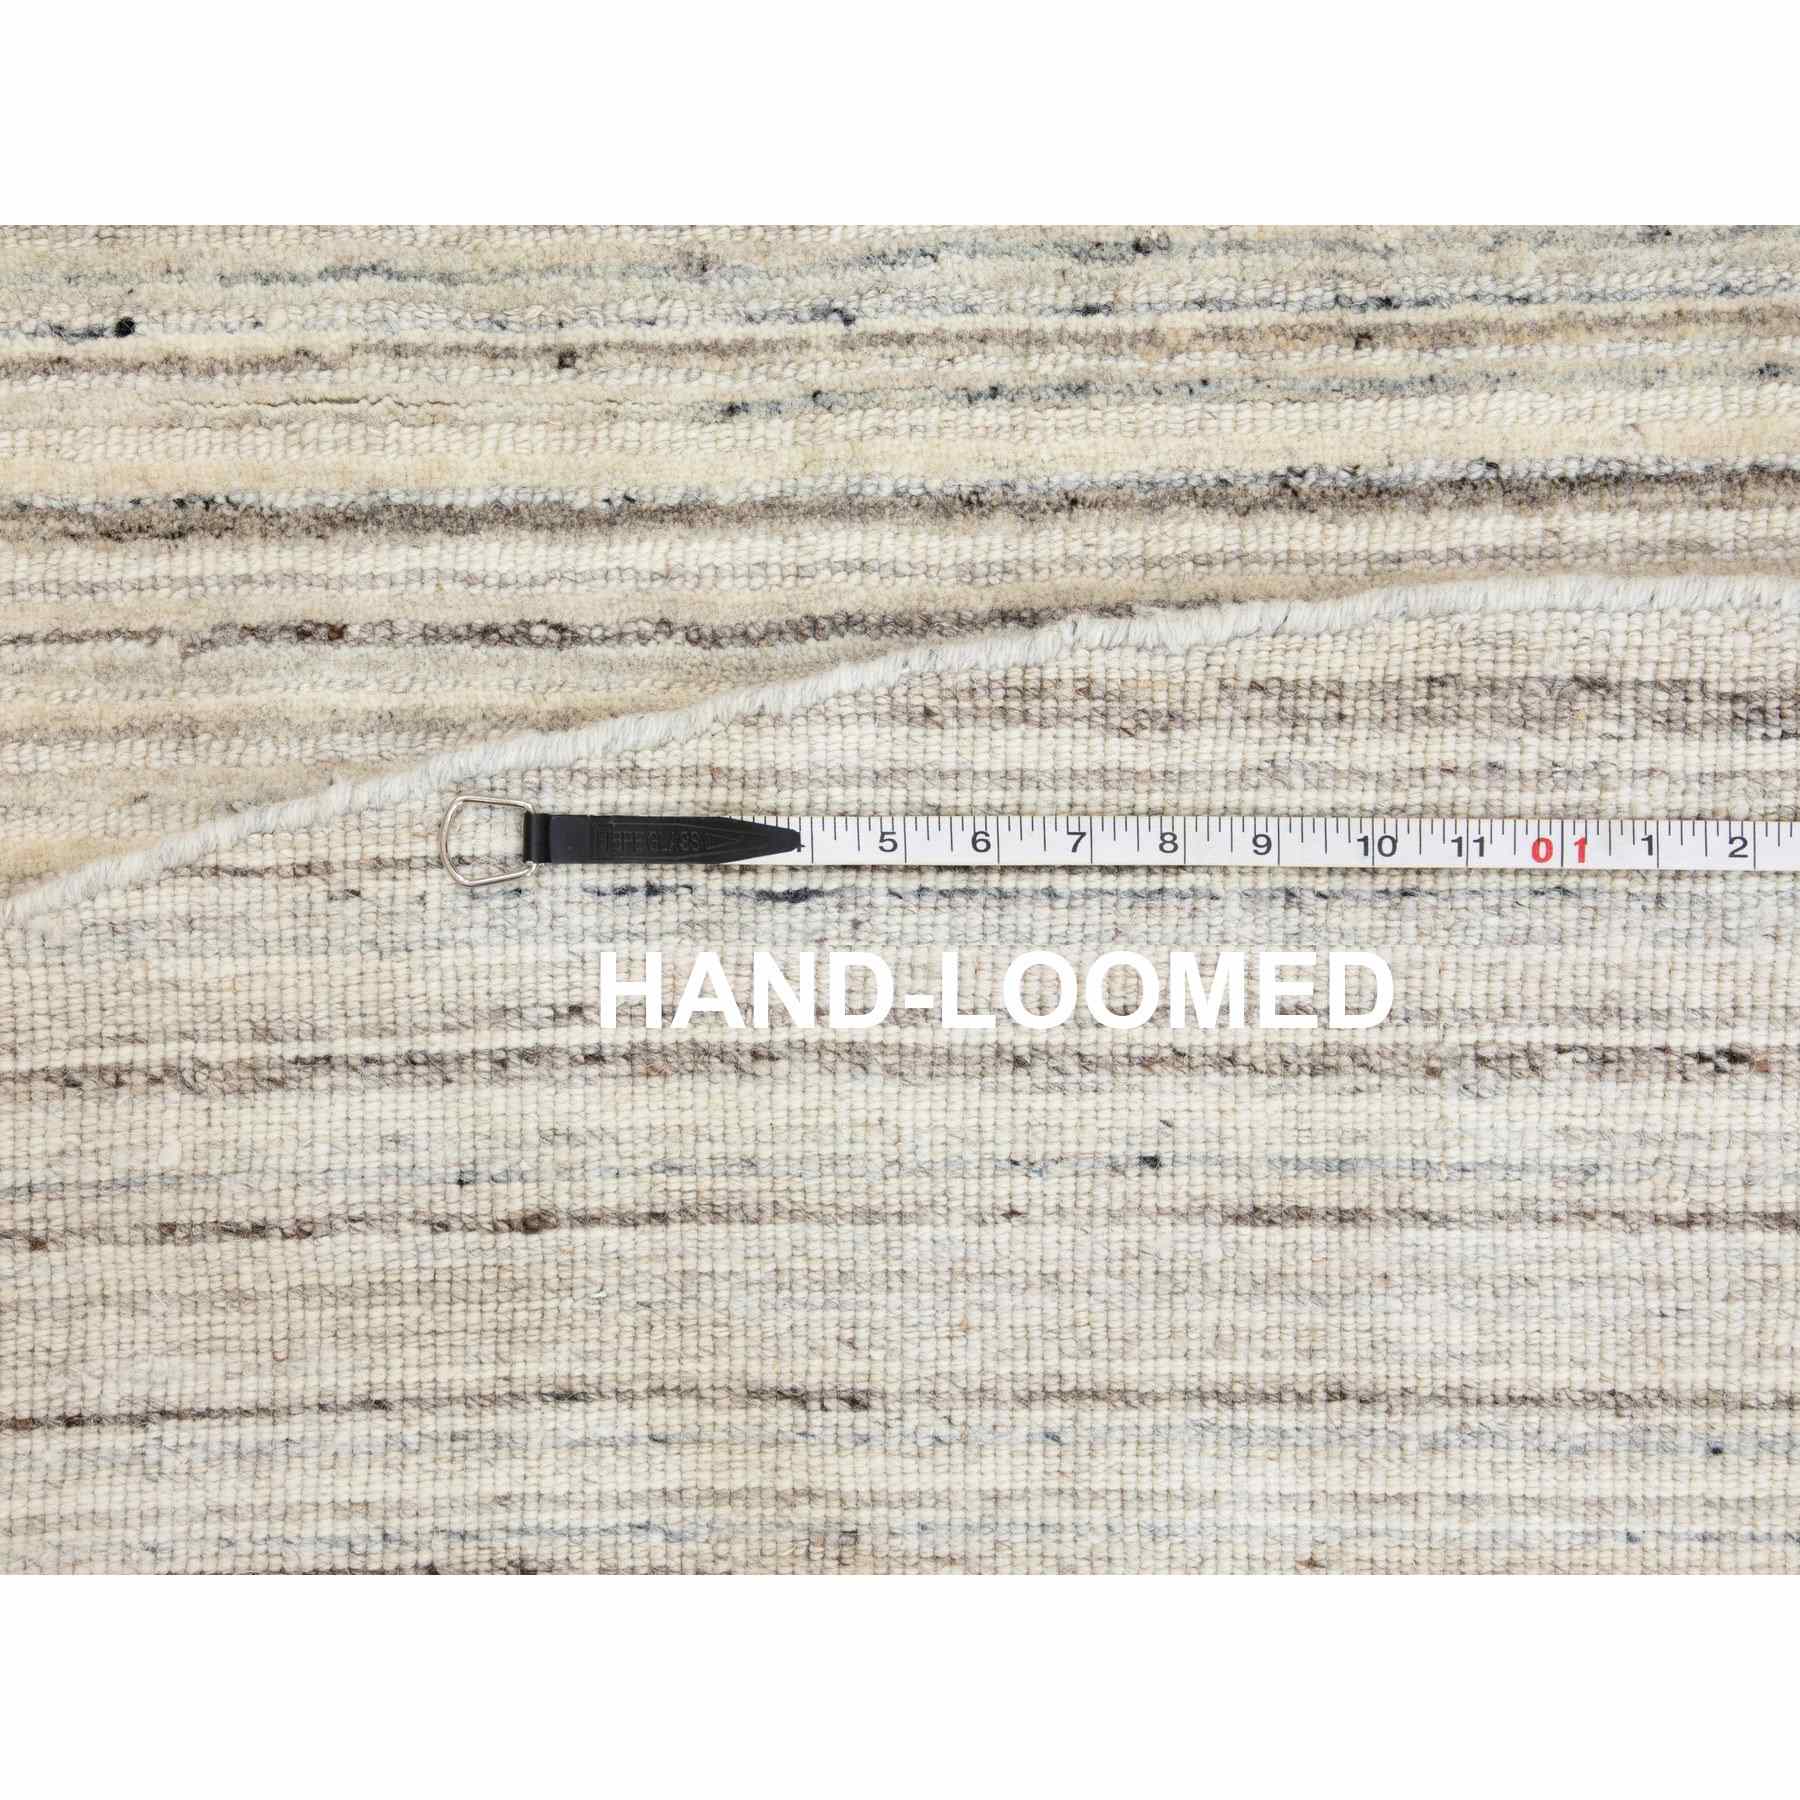 Hand-Loomed-Hand-Loomed-Rug-291745